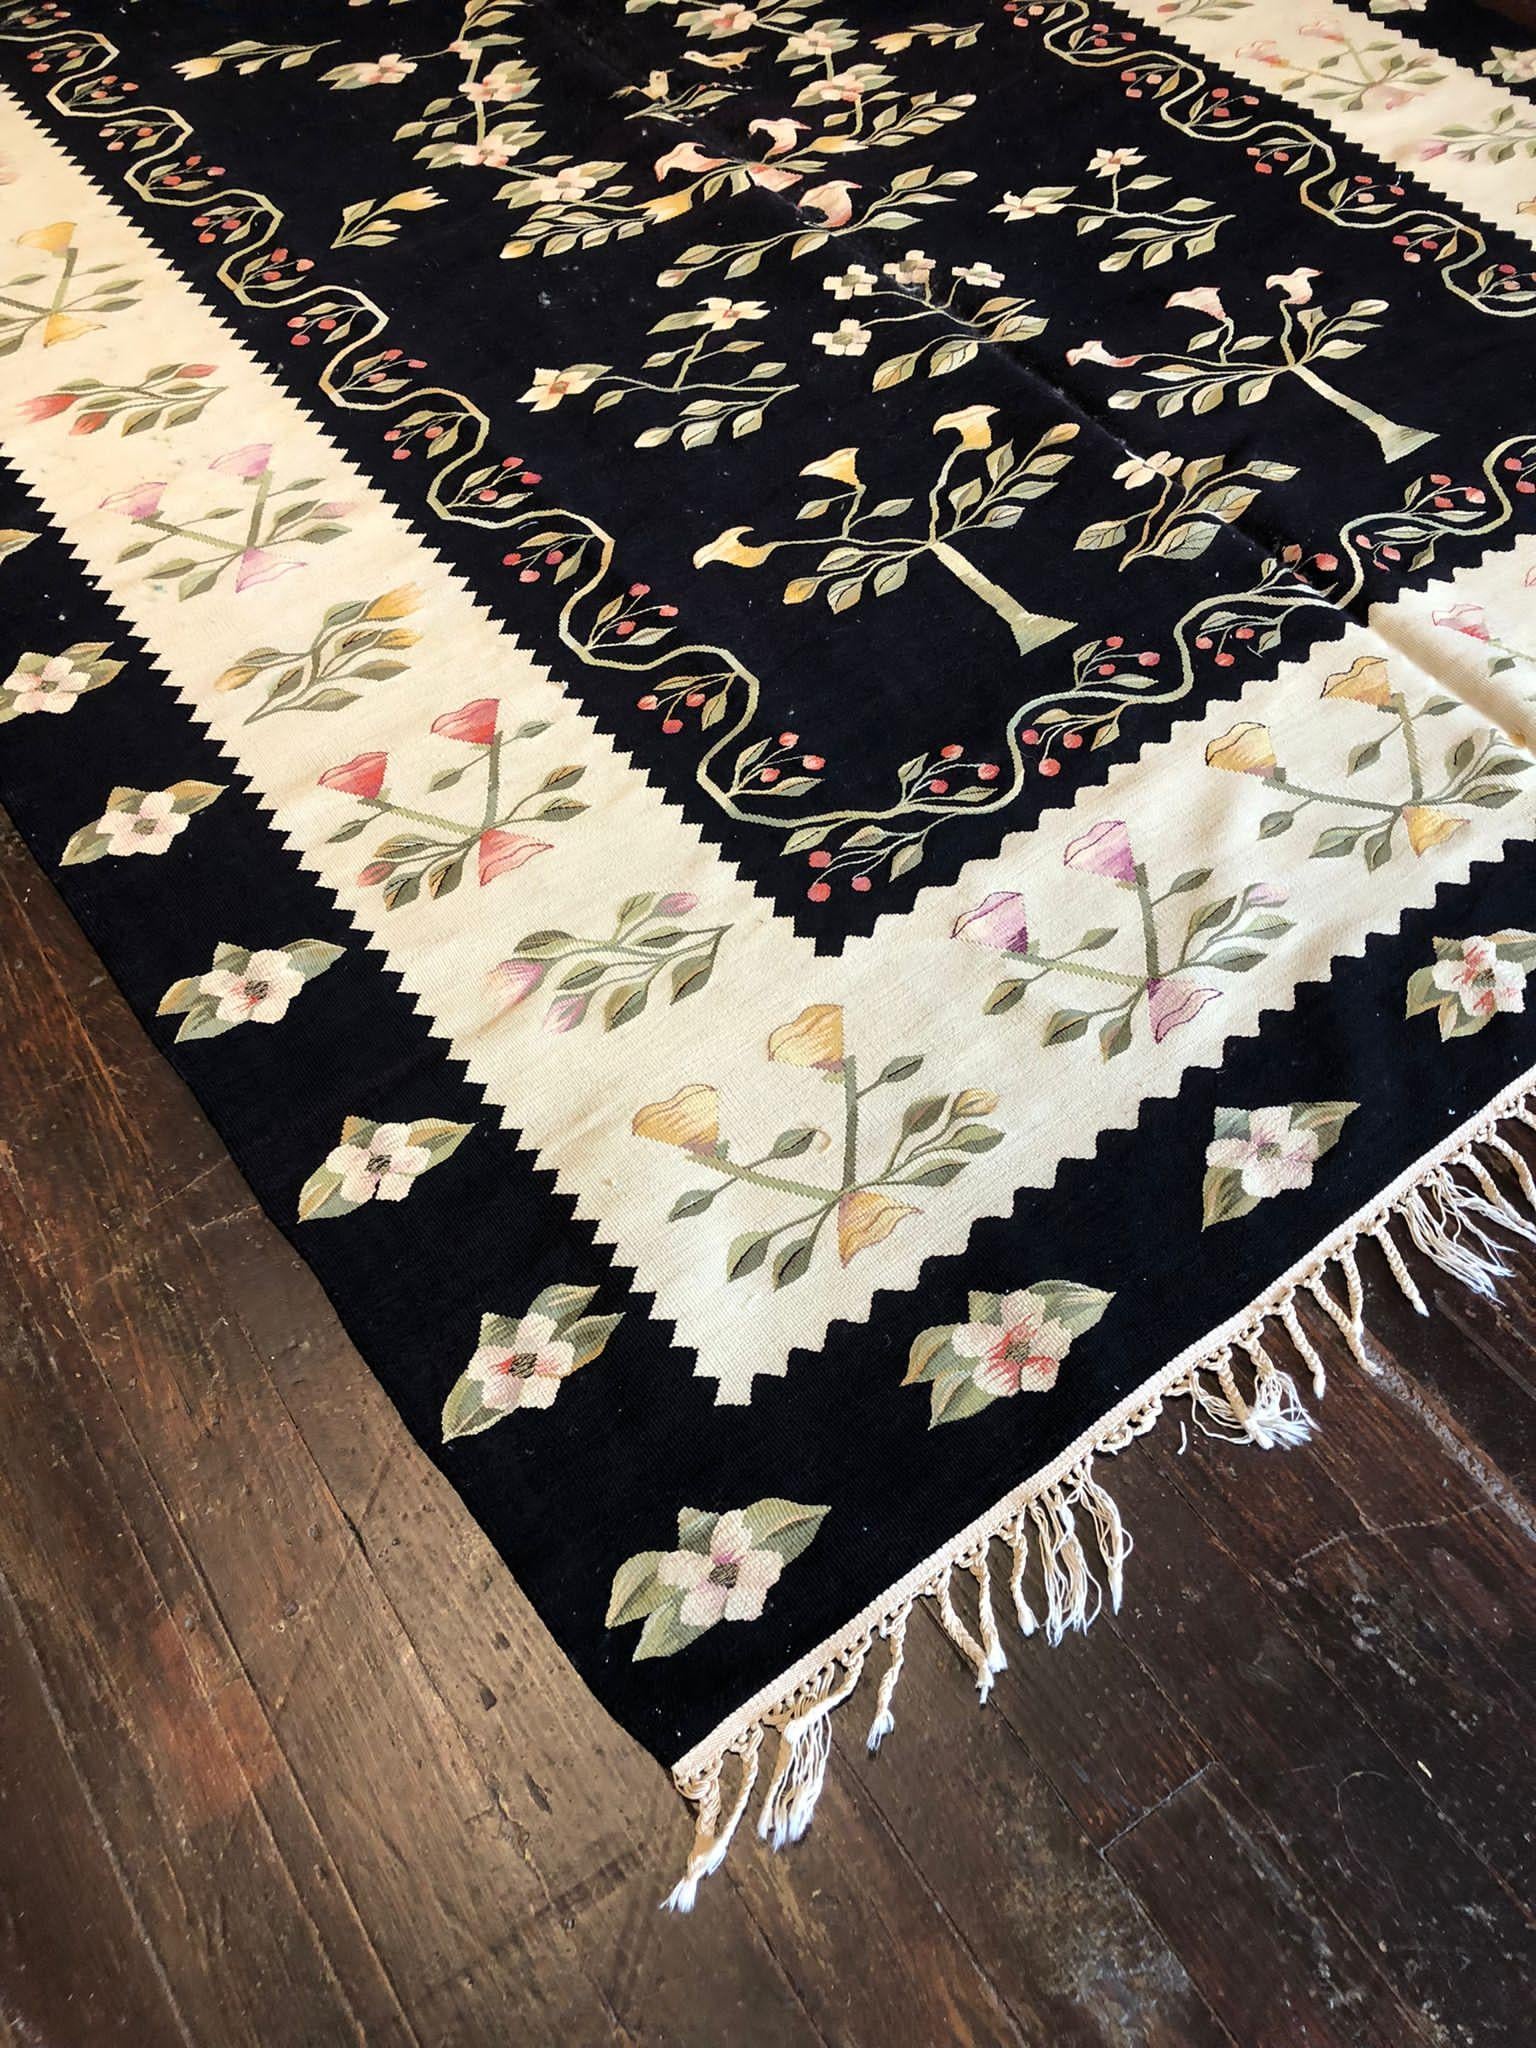  Le Rug & Kilim Vintage est un type de tapis tissé à plat distinctif et charmant, connu pour ses motifs géométriques et ses couleurs vibrantes. Ce kilim particulier, qui mesure 6 pieds 8 pouces sur 10 pieds, est une œuvre d'art textile captivante